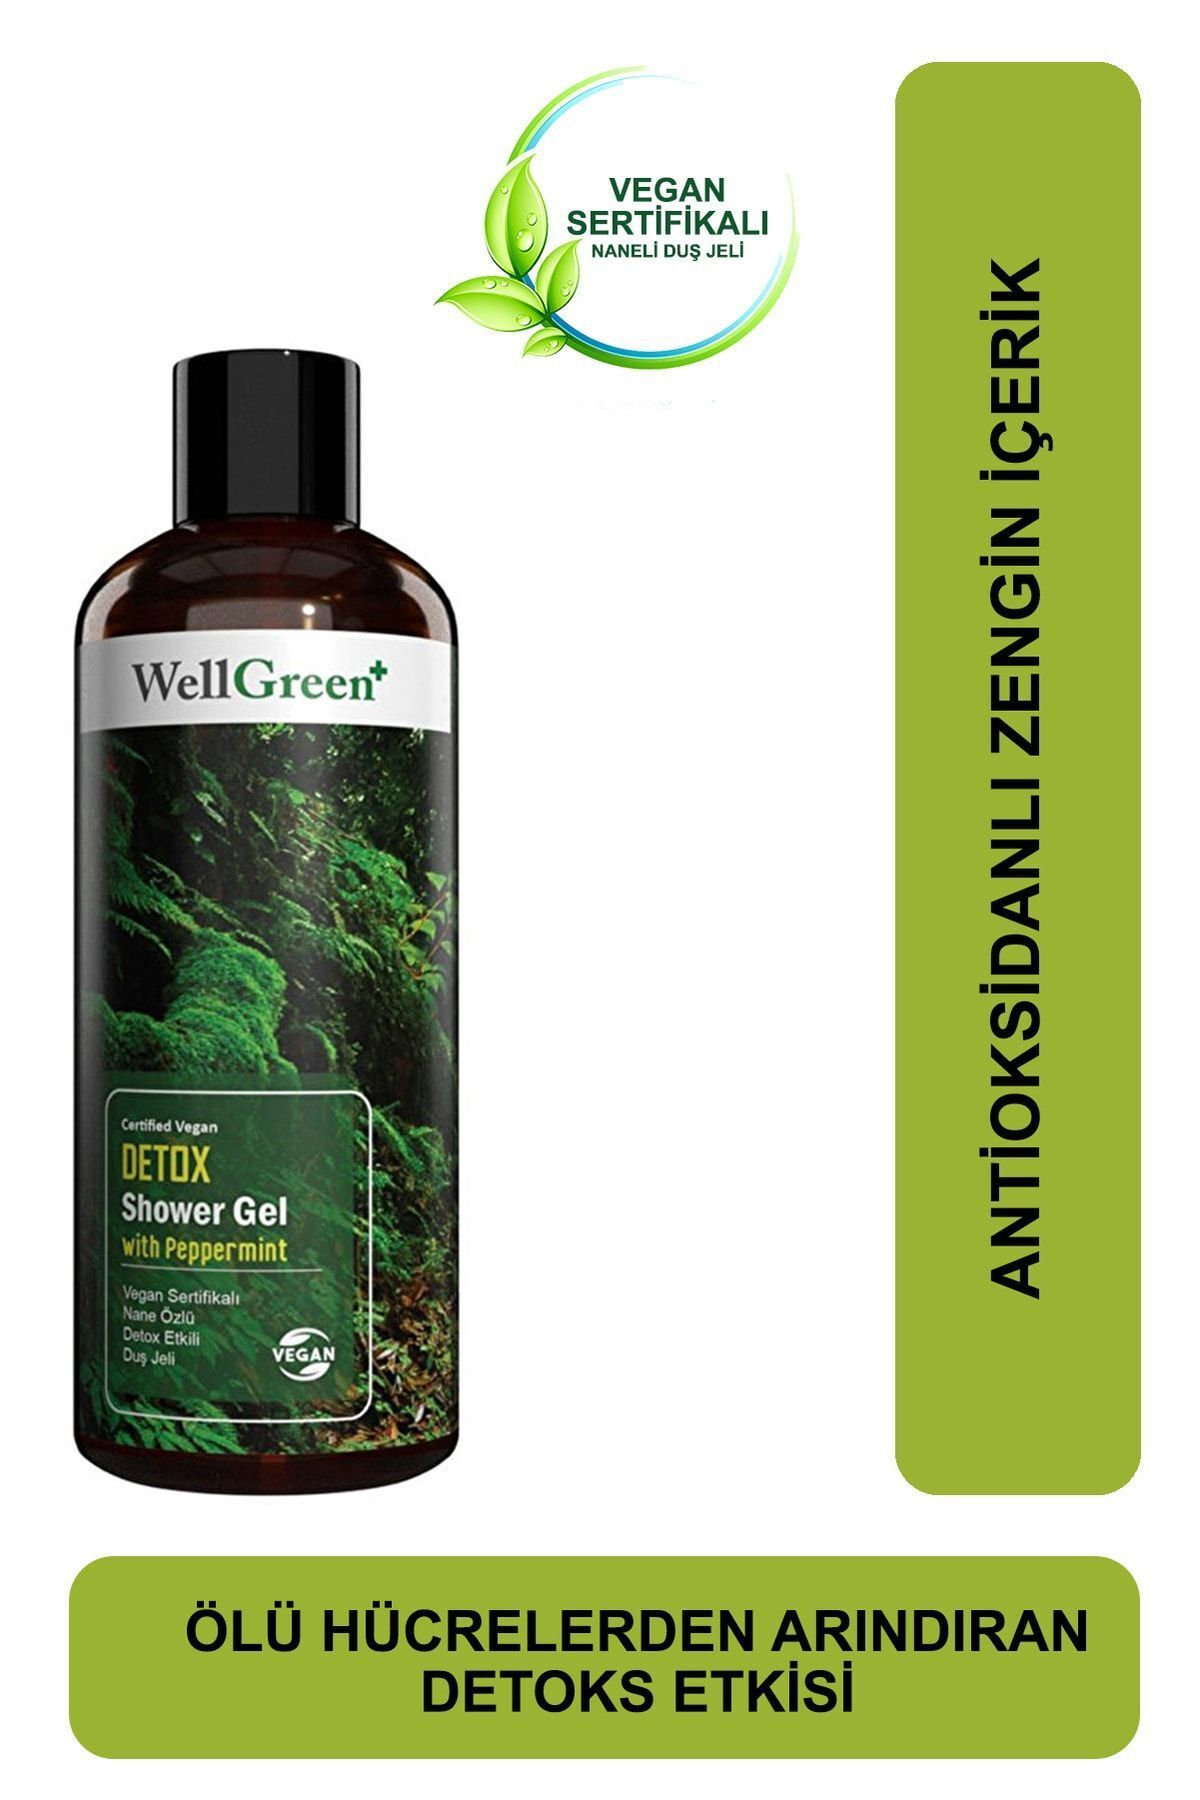 WellGreen + Vegan Sertifikalı Nane Özlü Detox Etkili Duş Jeli - 400ml